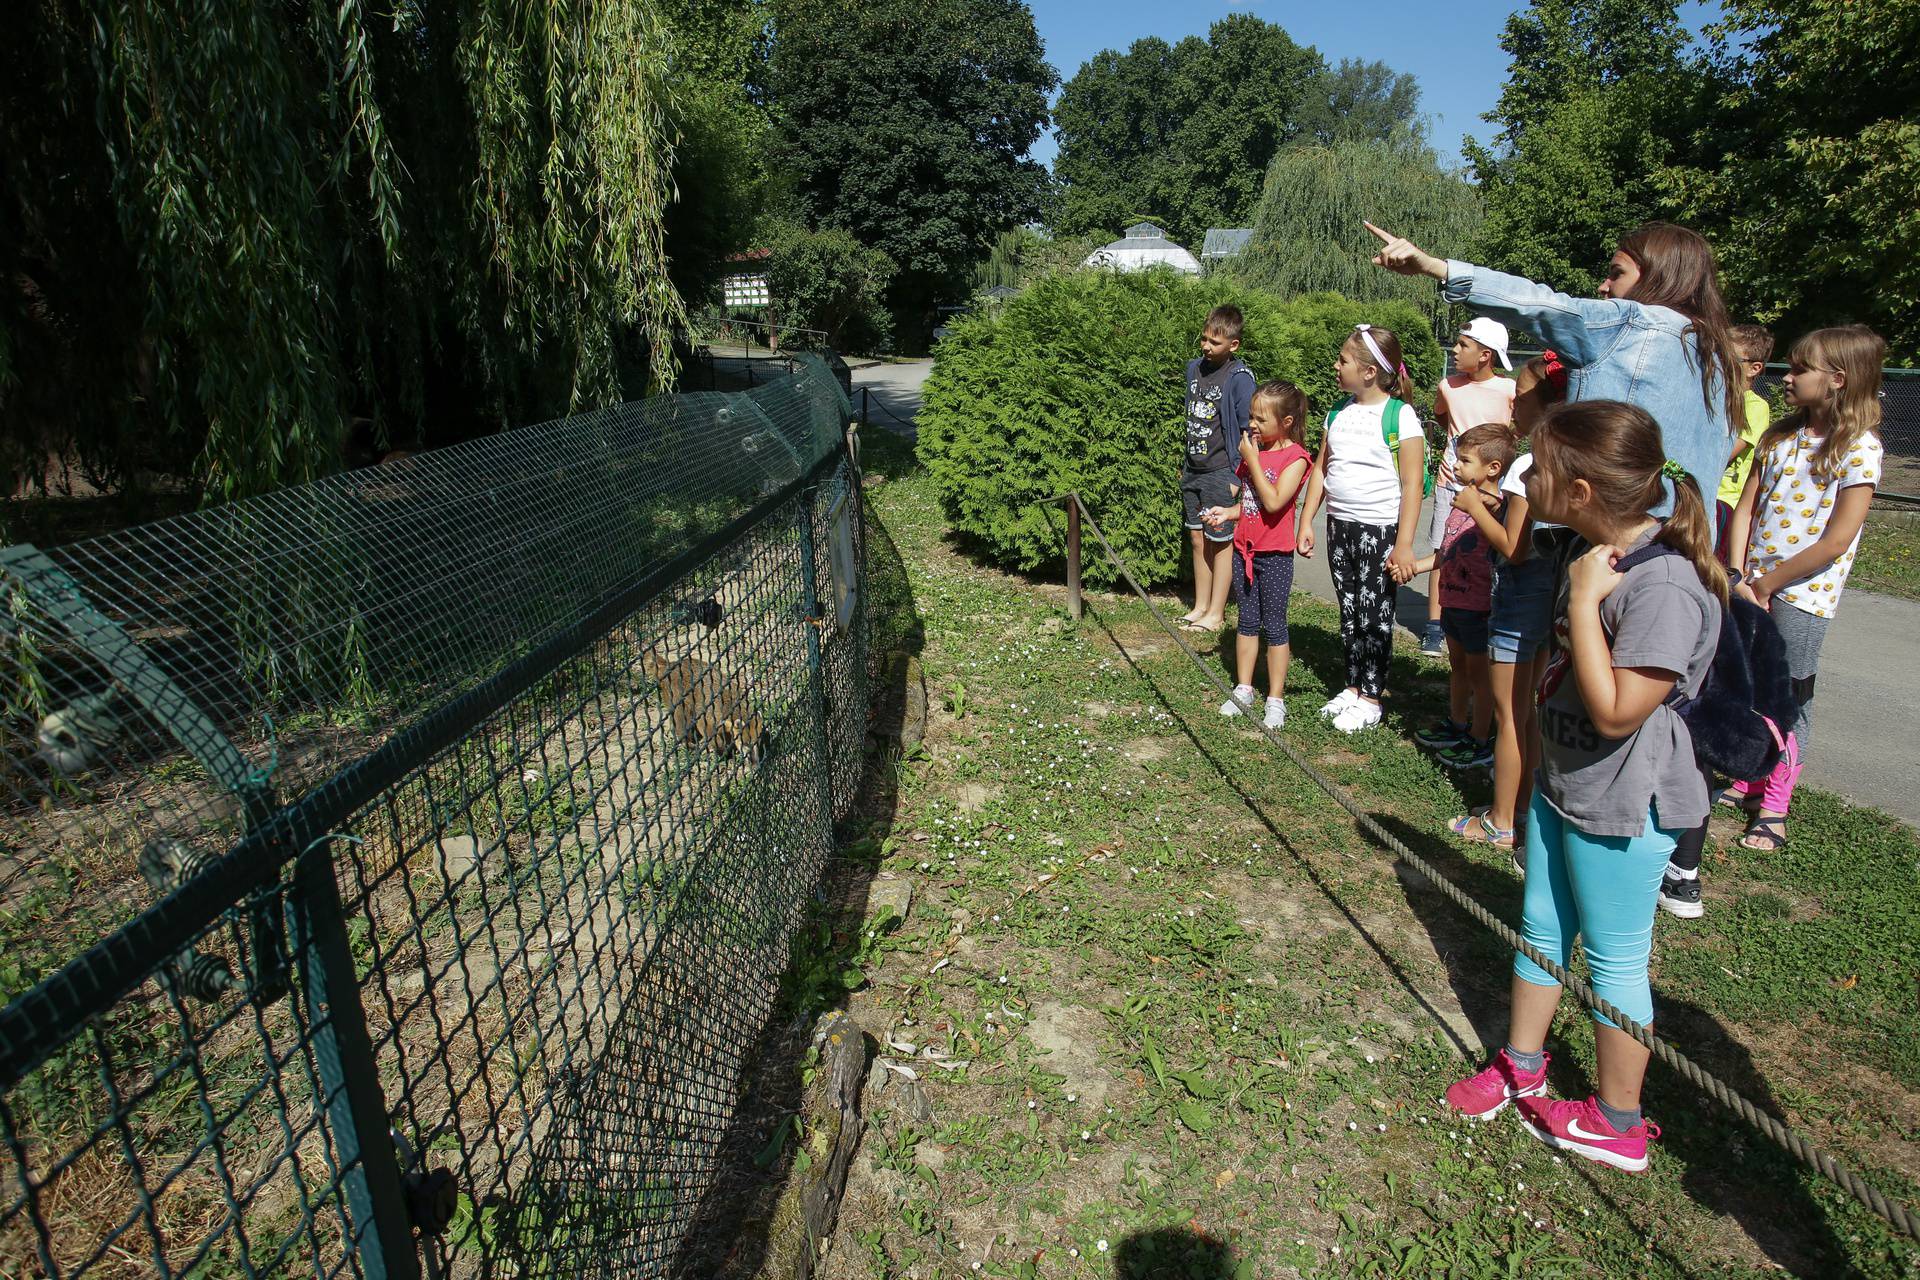 Mali Osječani praznike provode u Zoološkom vrtu i uživaju učeći o zmijama, devama i ribama